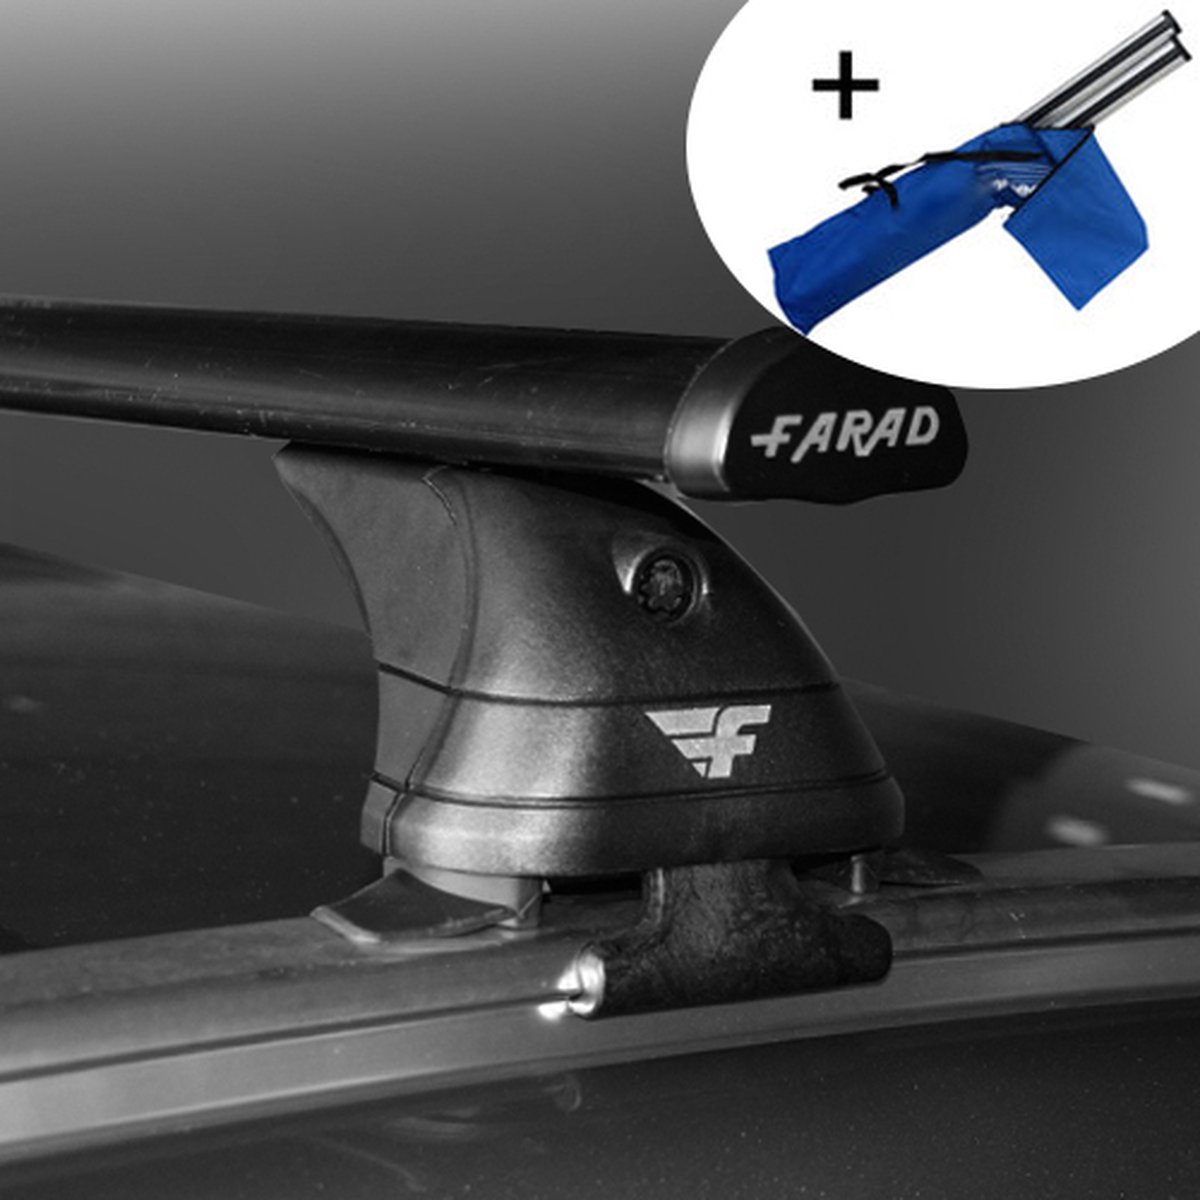 Dakdragers geschikt voor Seat Ateca 5 deurs hatchback vanaf 2016 - Staal - inclusief dakdrager opbergtas